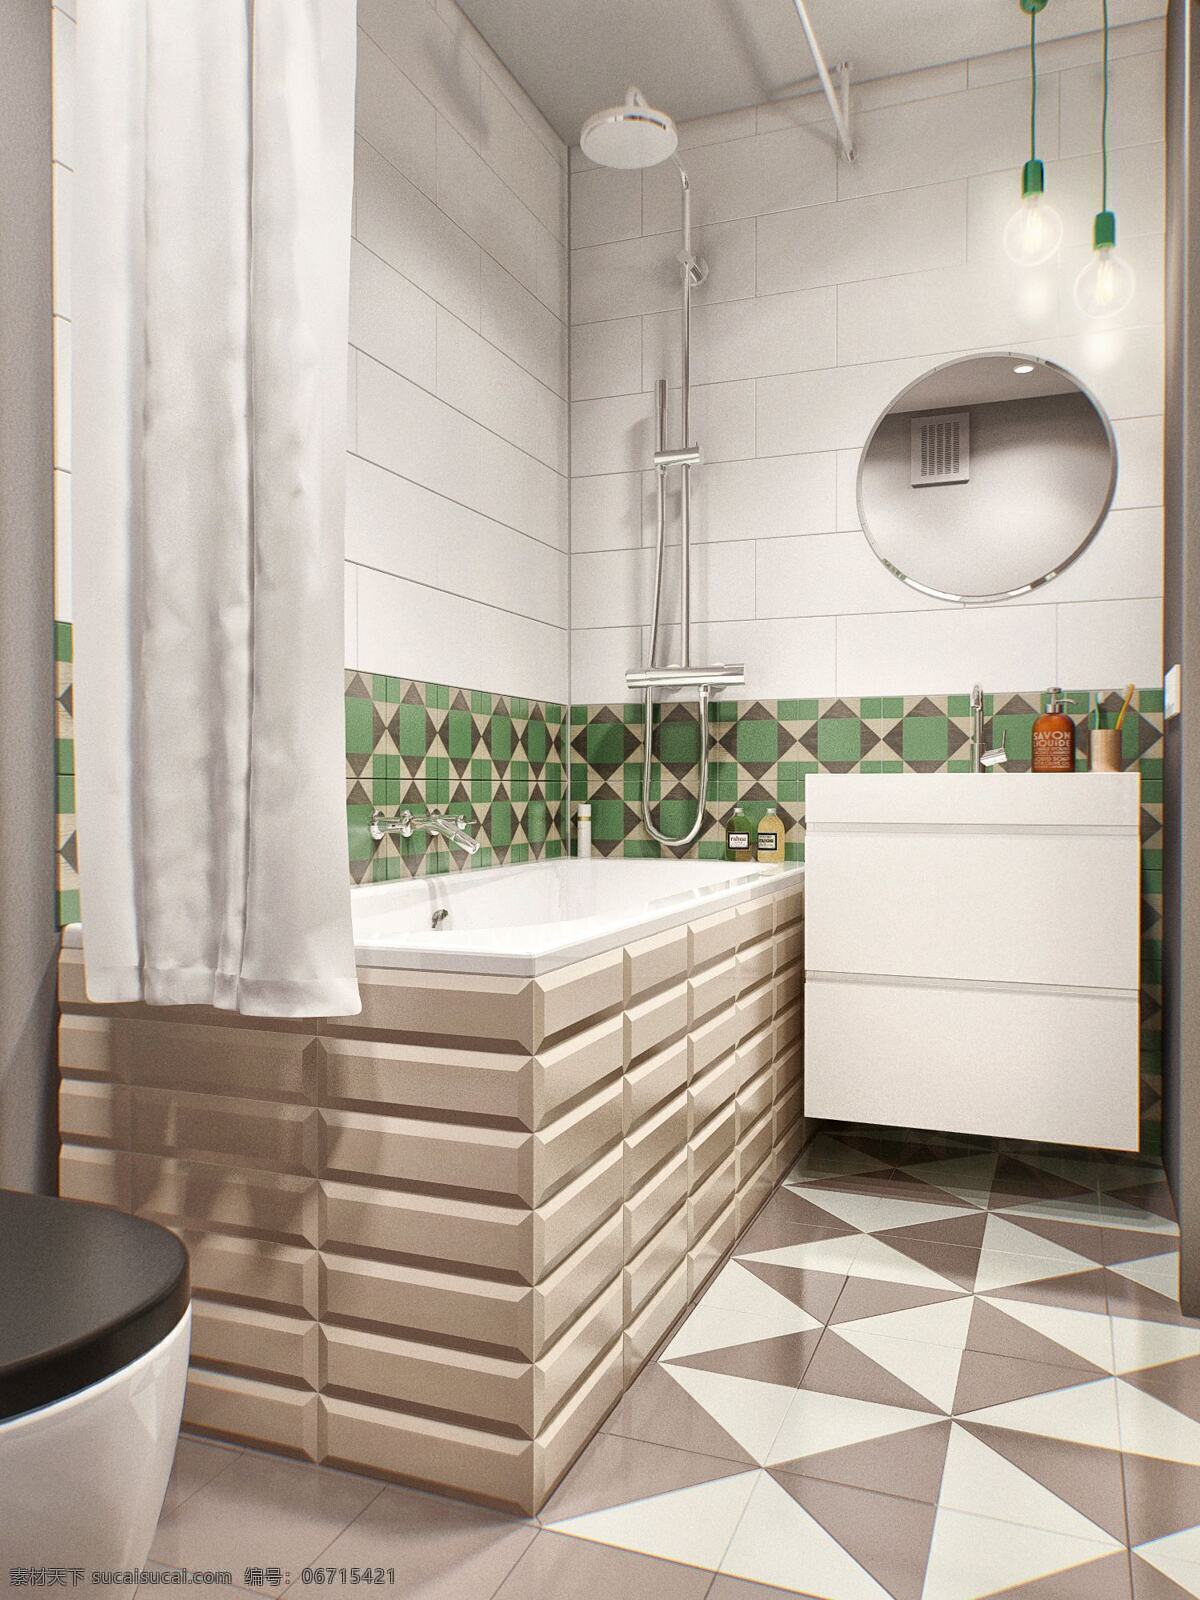 简约 时尚 卫生间 浴缸 装修 效果图 窗帘 吊灯 花色地板砖 马桶 洗手盆